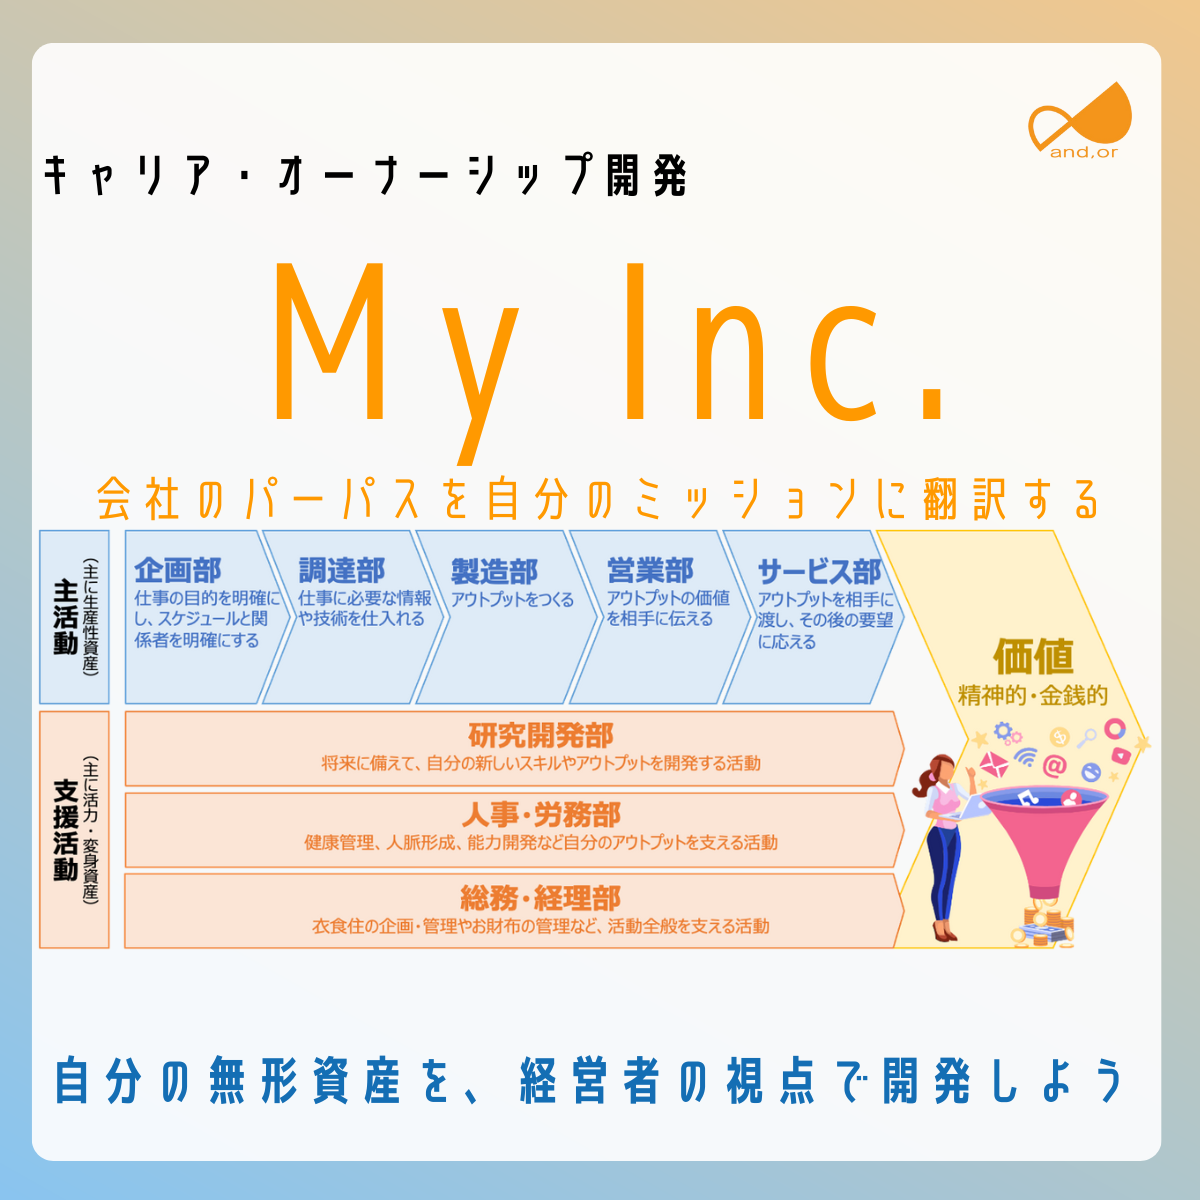 My Inc.-キャリア・オーナーシップ開発